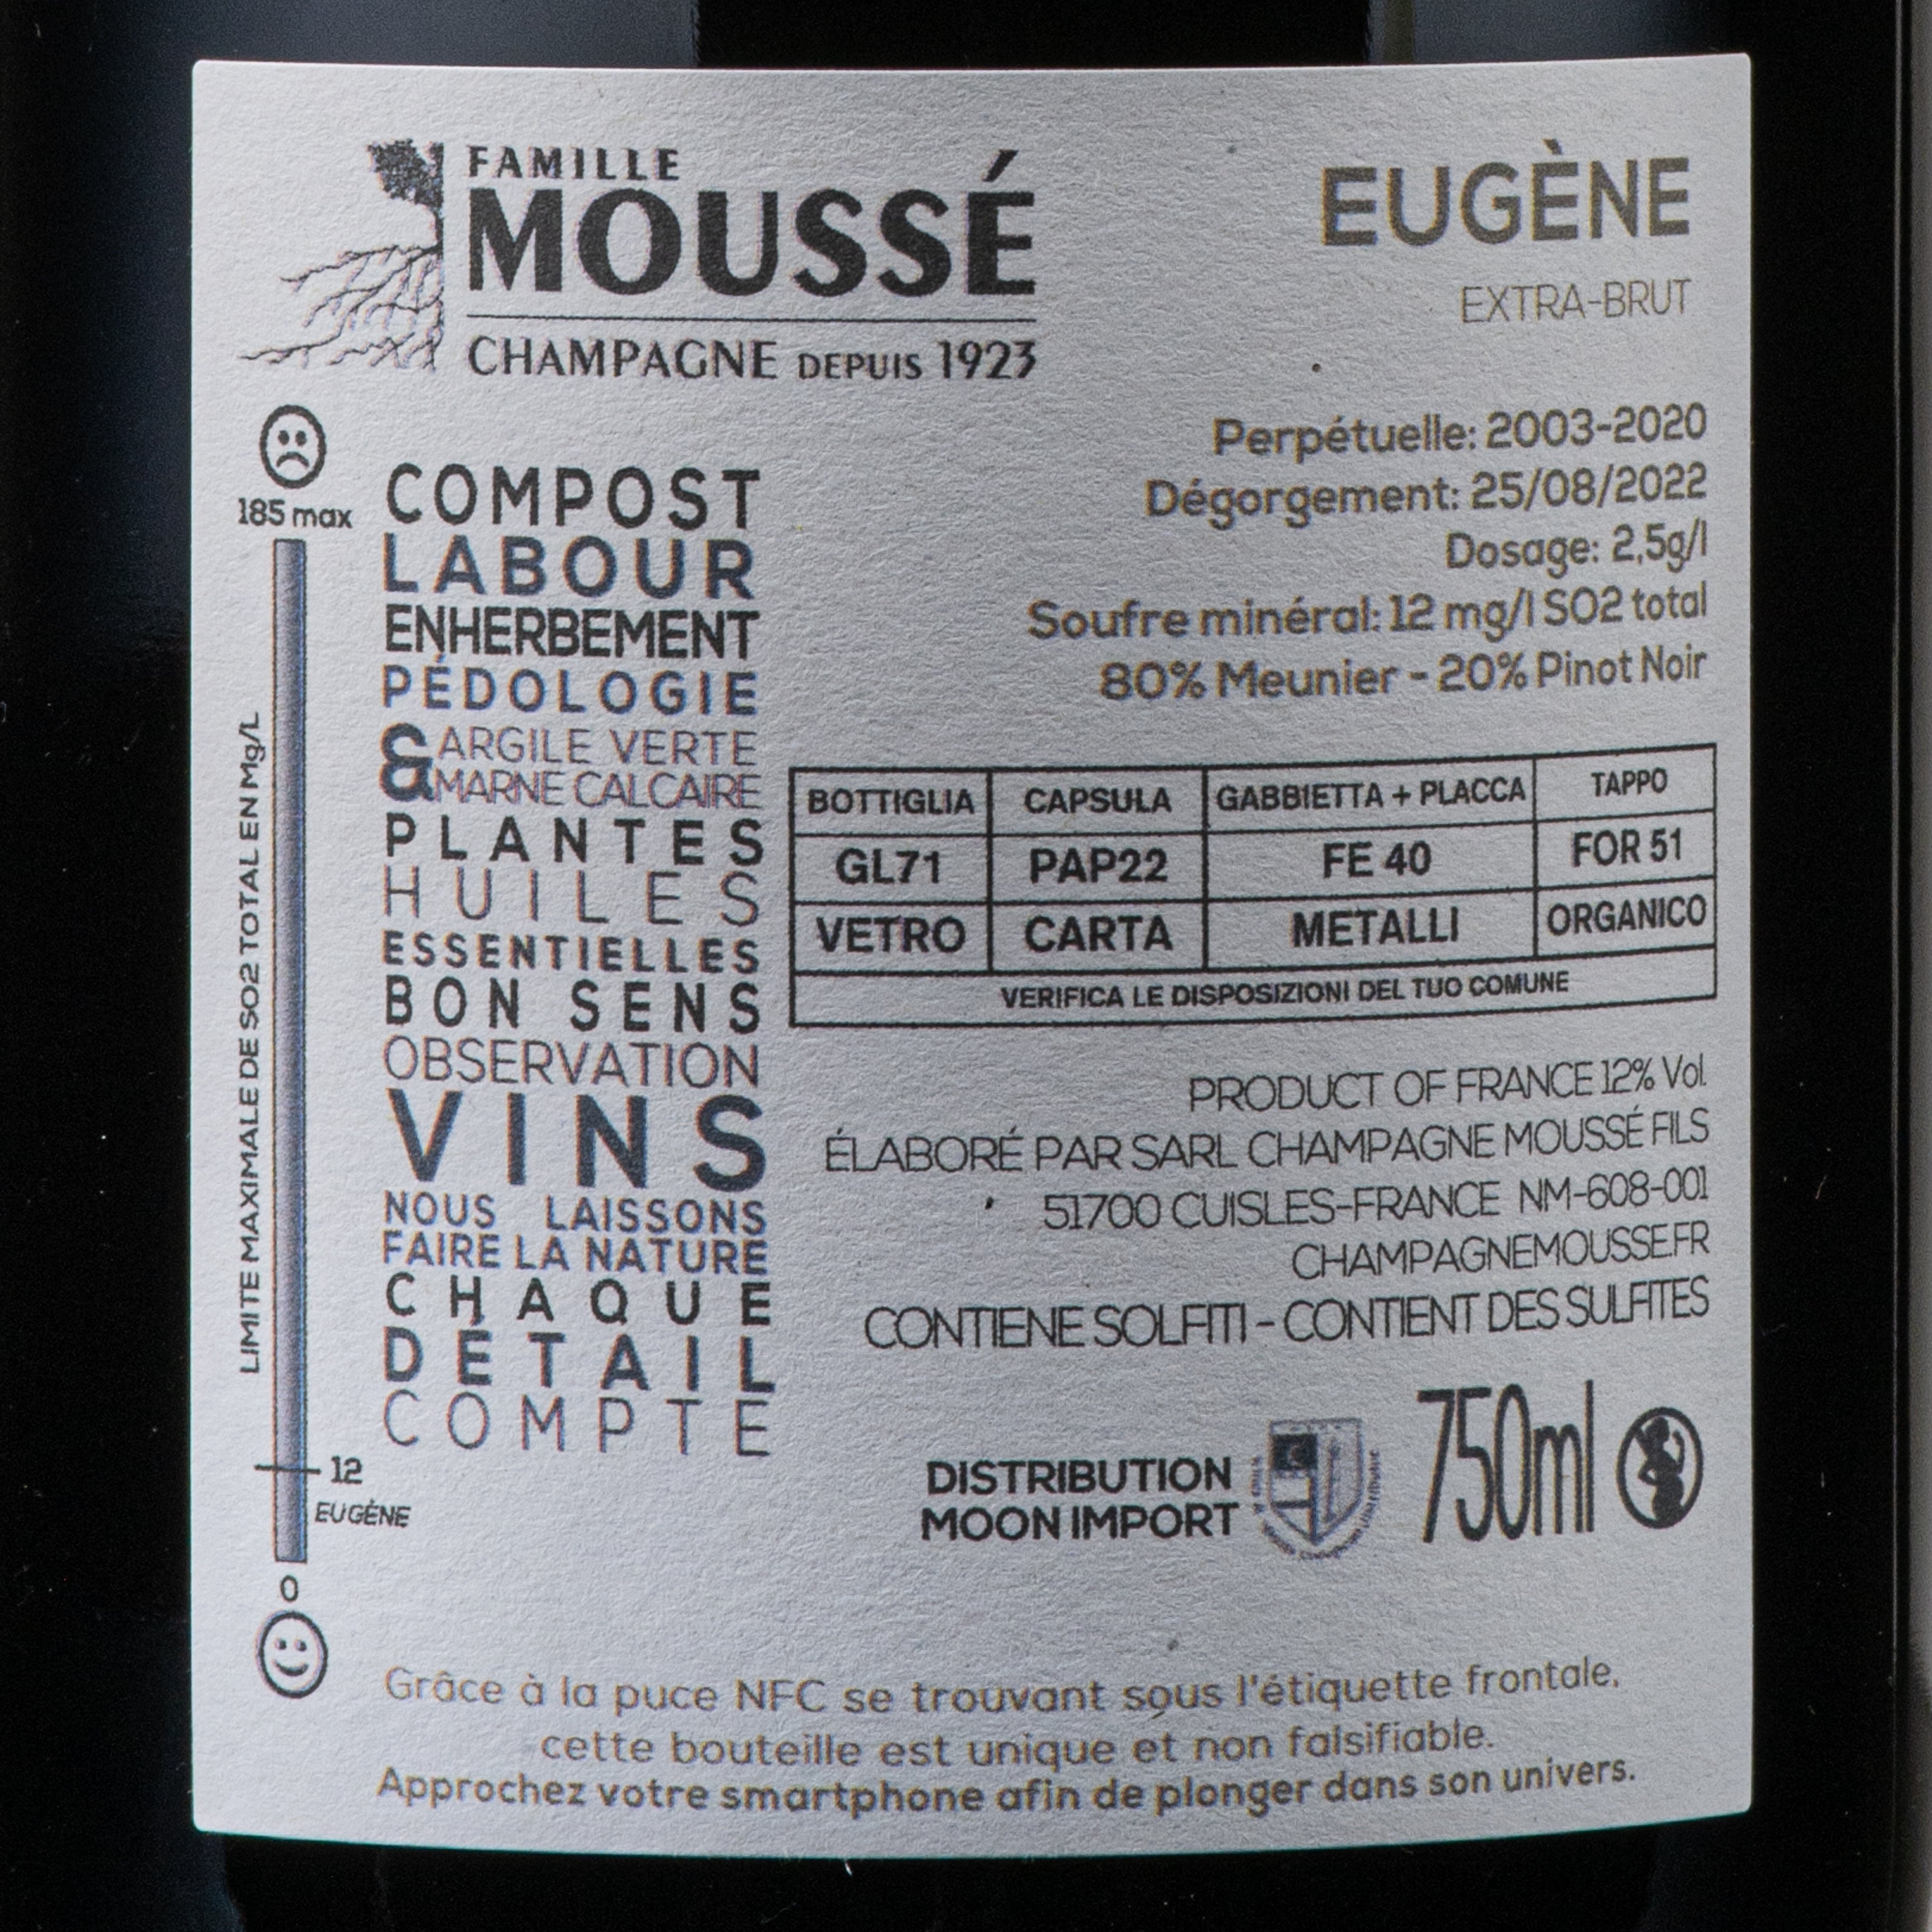 Champagne Eugene Extra Brut Mousse Fils lt.0,750